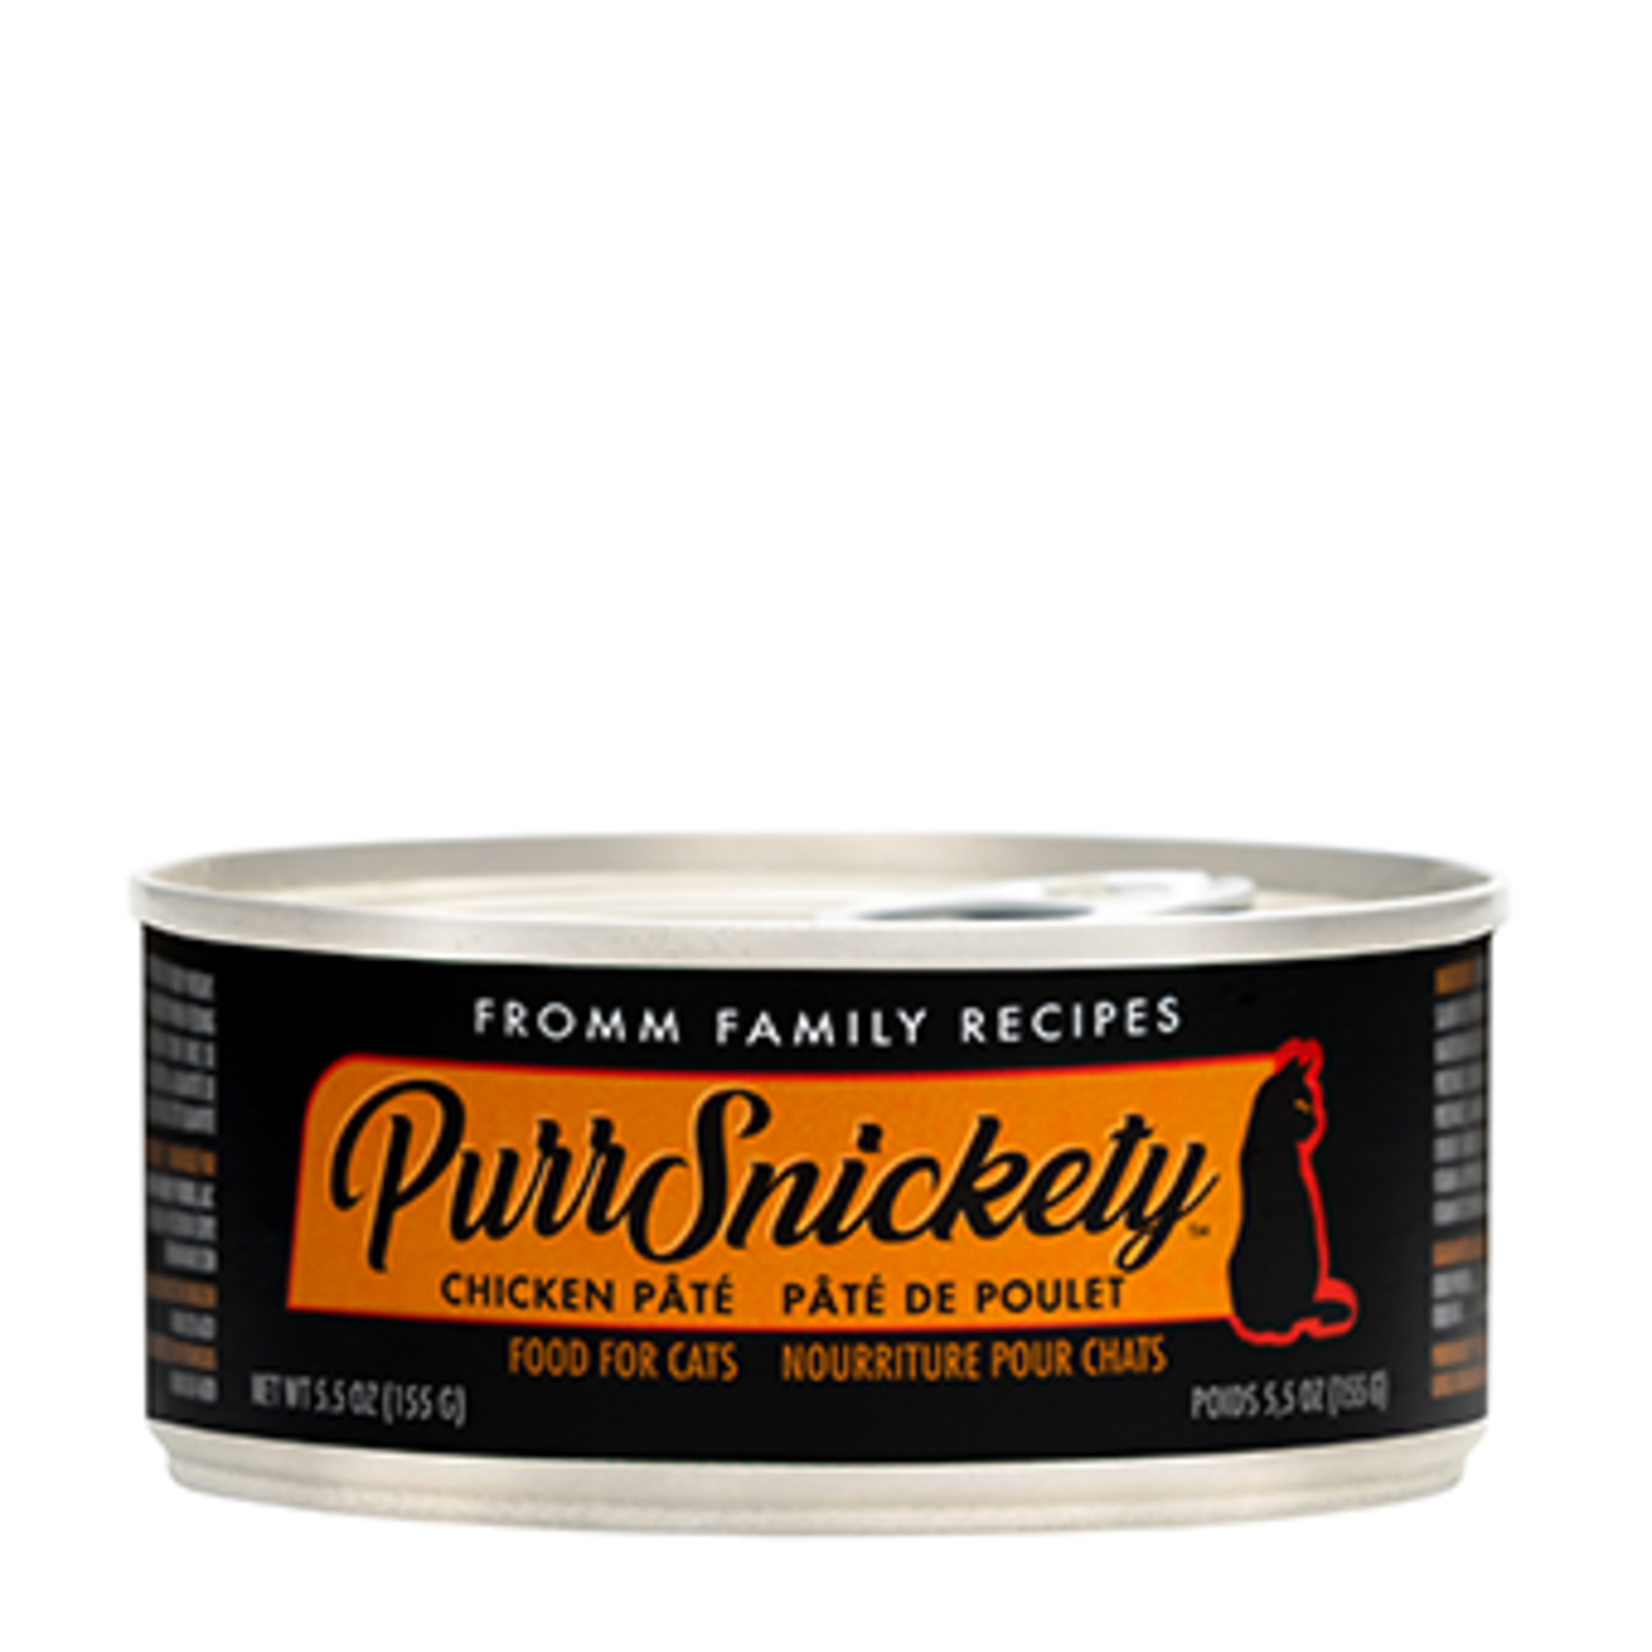 Fromm Pâté au poulet-PurrSnickety - 5.5 oz